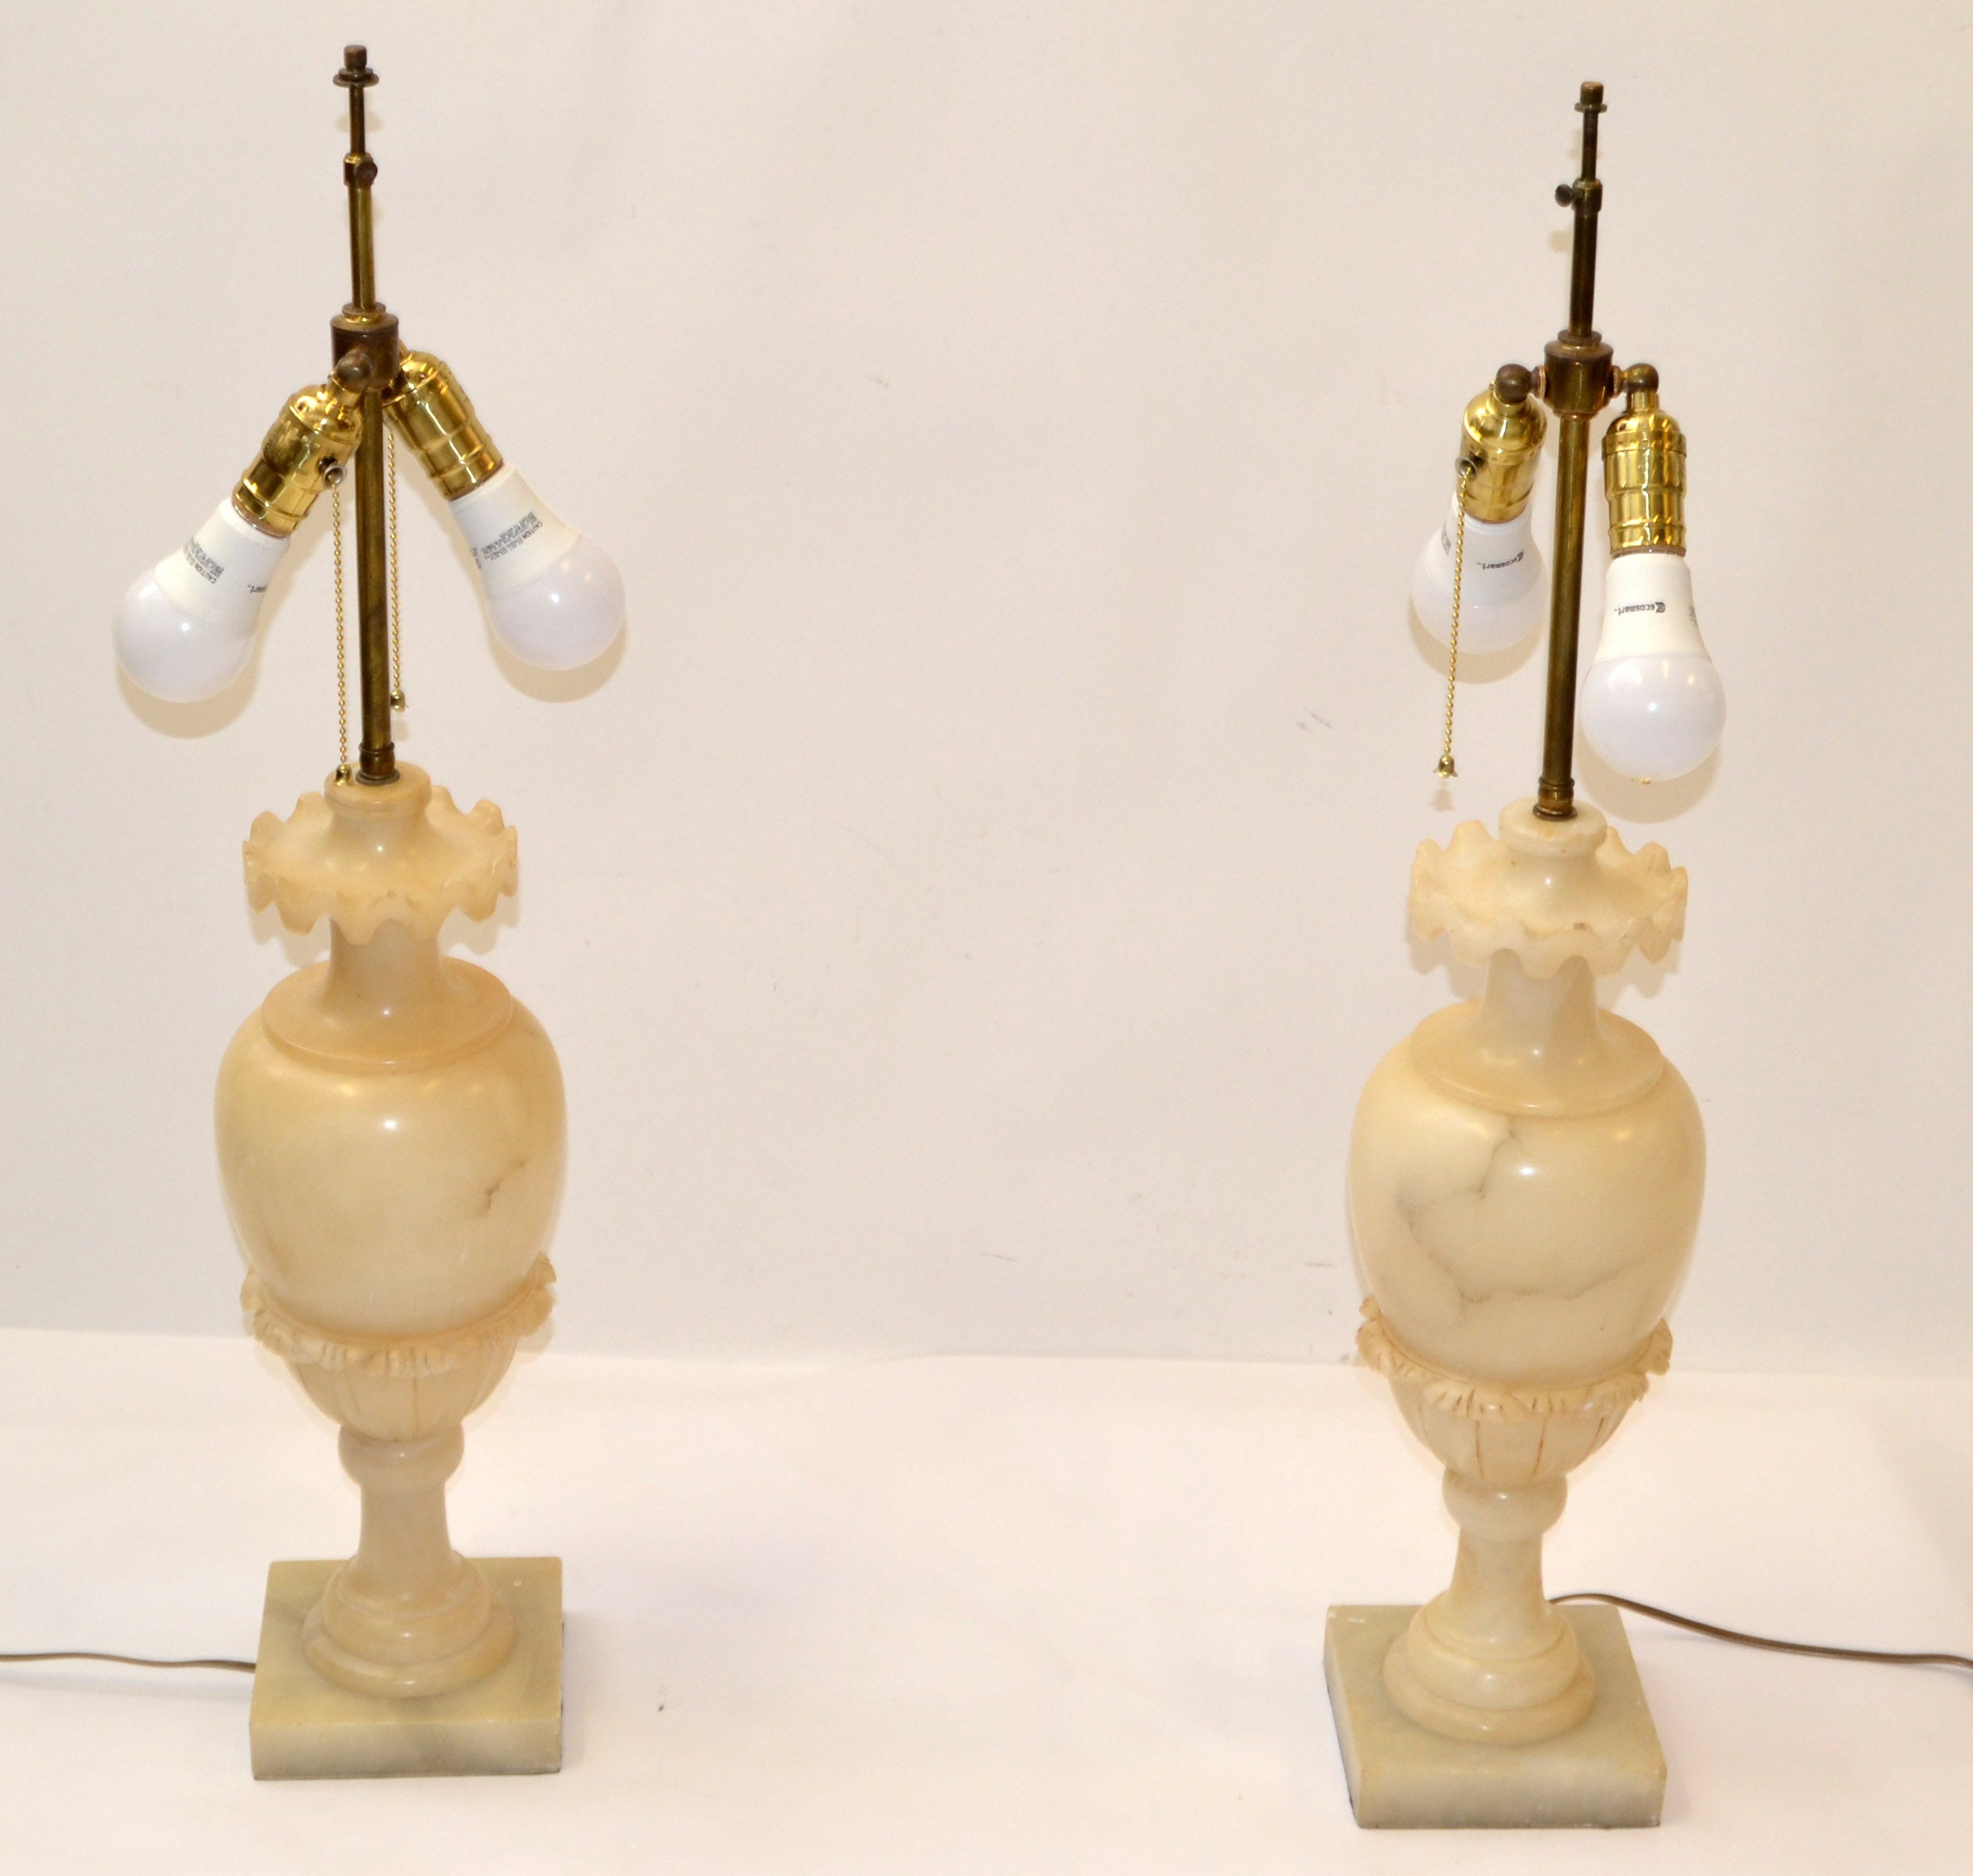 Paire de lampes de table en forme d'urne en albâtre de couleur beige avec des veines marron clair. 
Tous d'époque Art déco, sculptés à la main, câblés aux États-Unis et fabriqués en Italie vers les années 1930-1940.    
Les supports de lampe sont